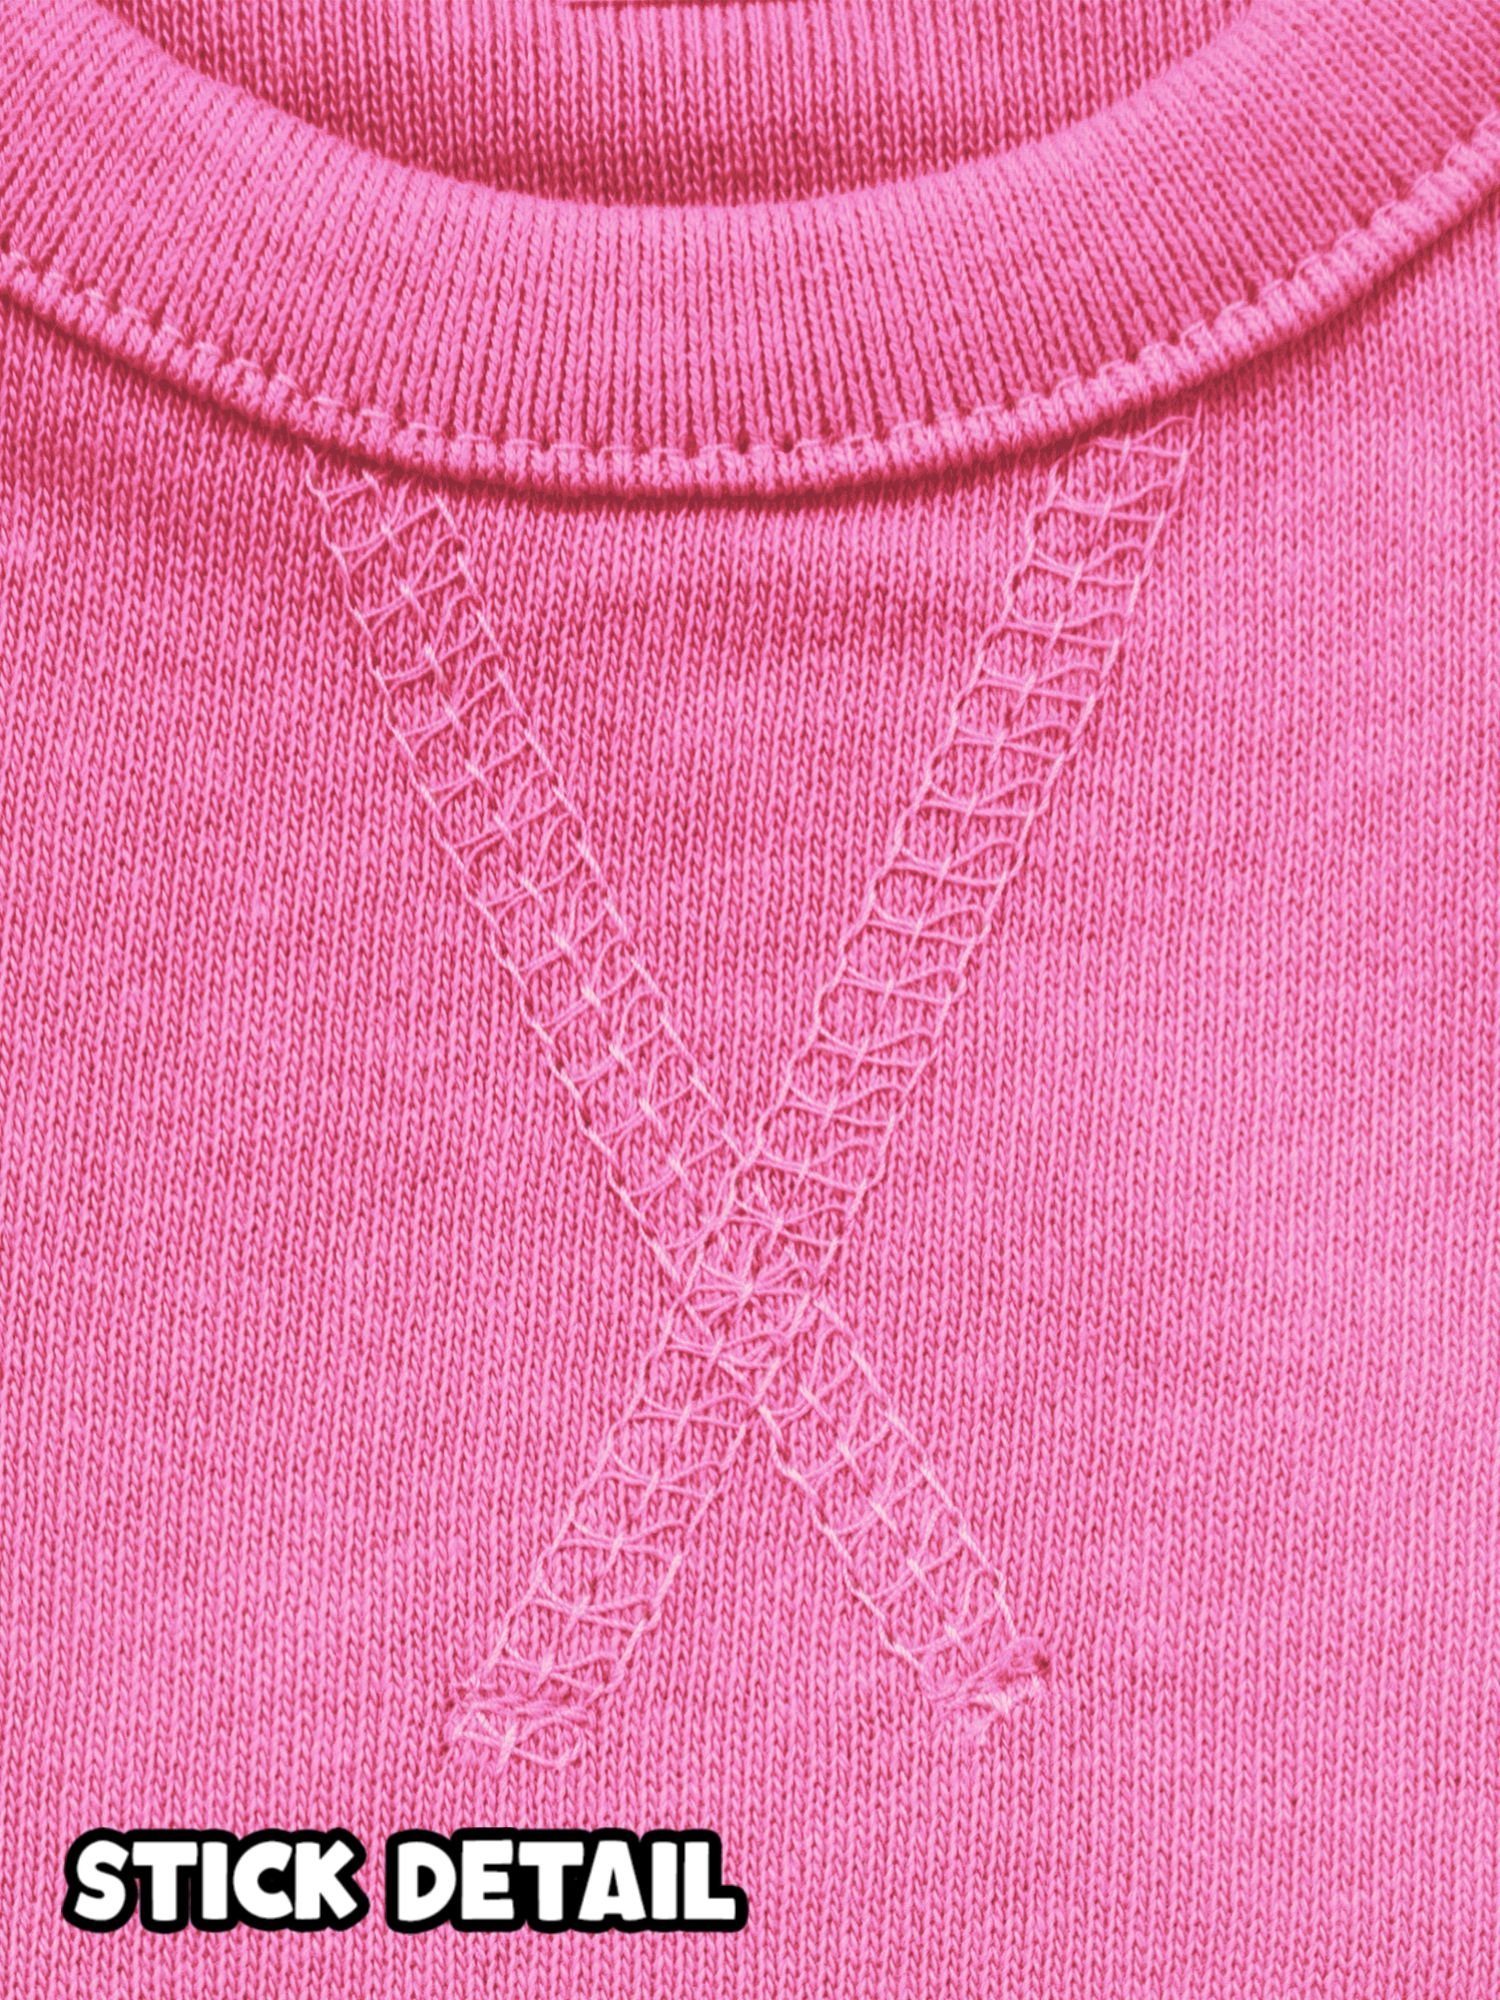 Finger um den Sweatshirt Pink 2 Shirtracer Großeltern wickeln Oma Baby und Sprüche Opa